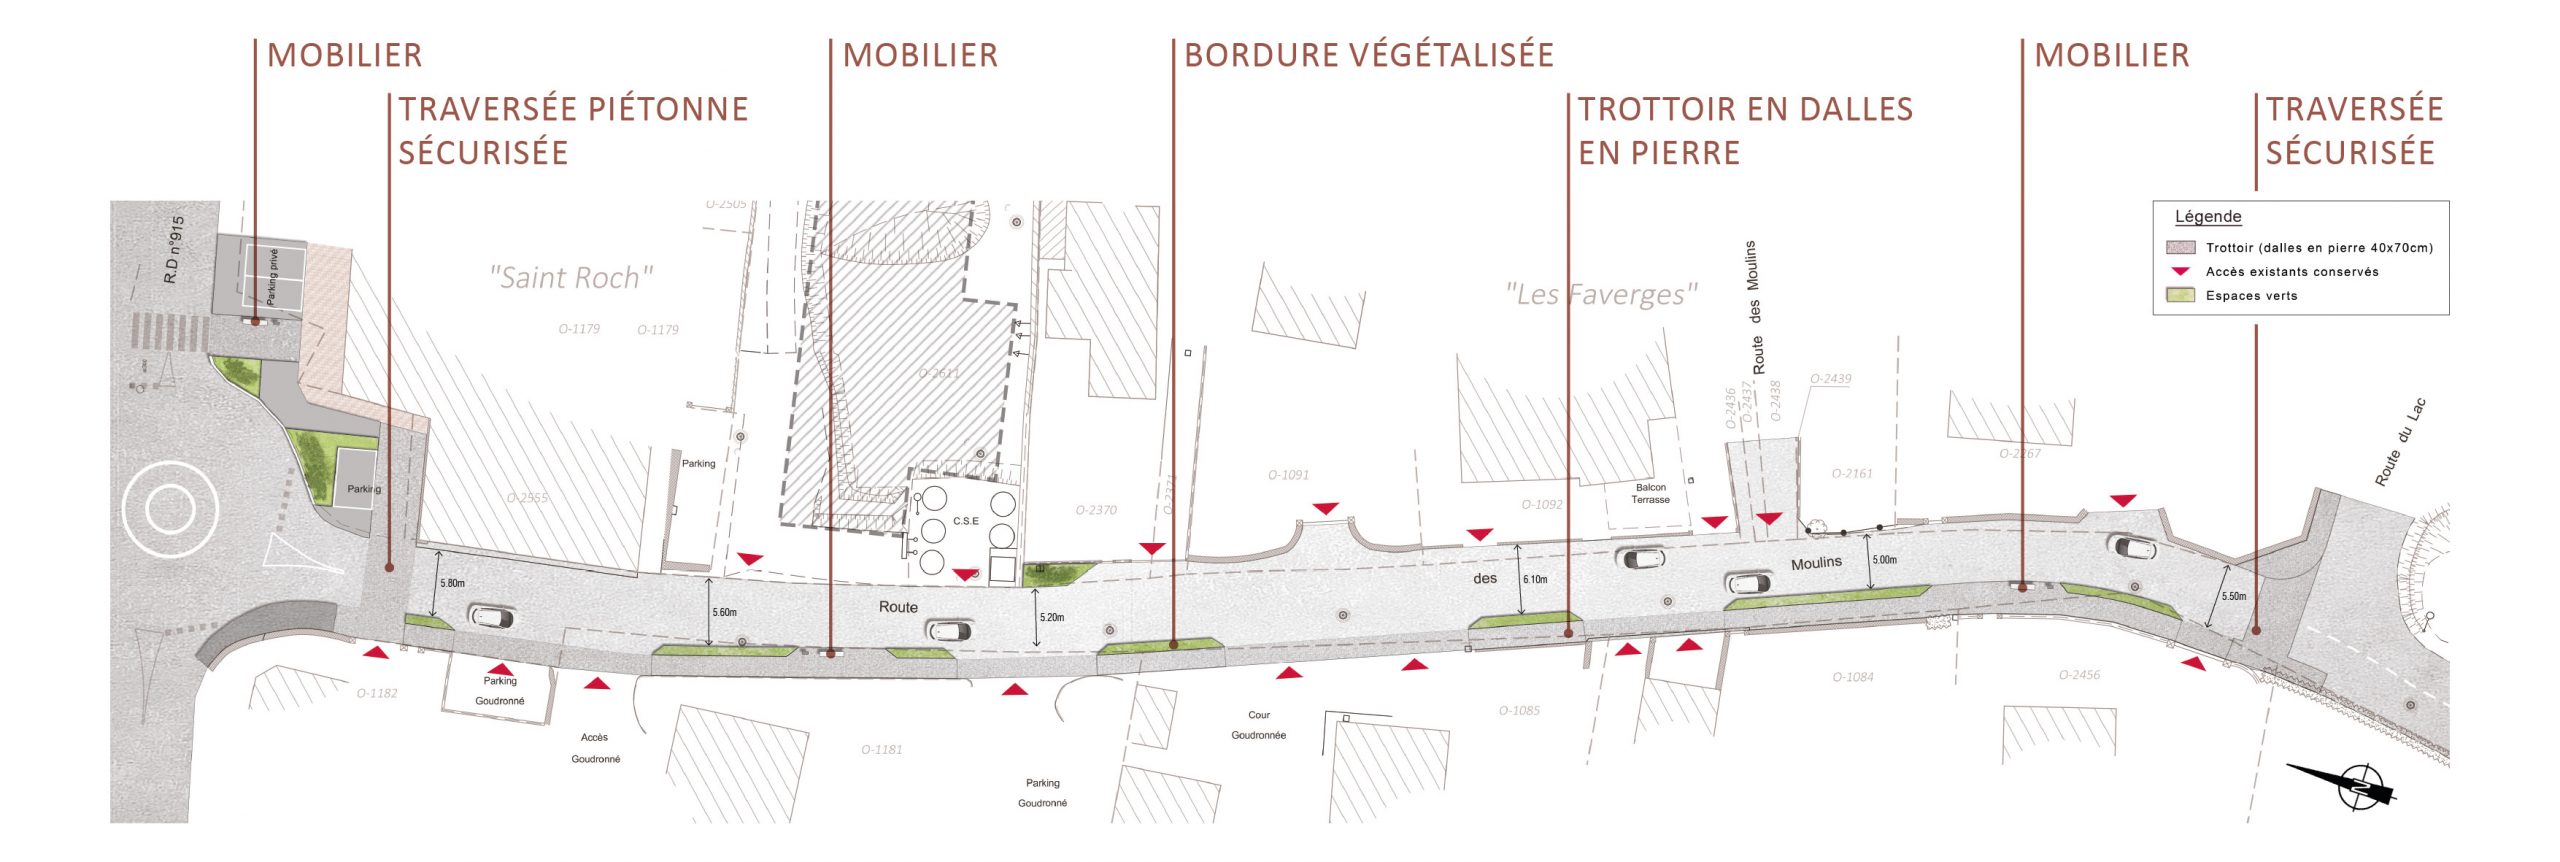 Réglementation des travaux de réfection de la Route des Moulins (phase 2)